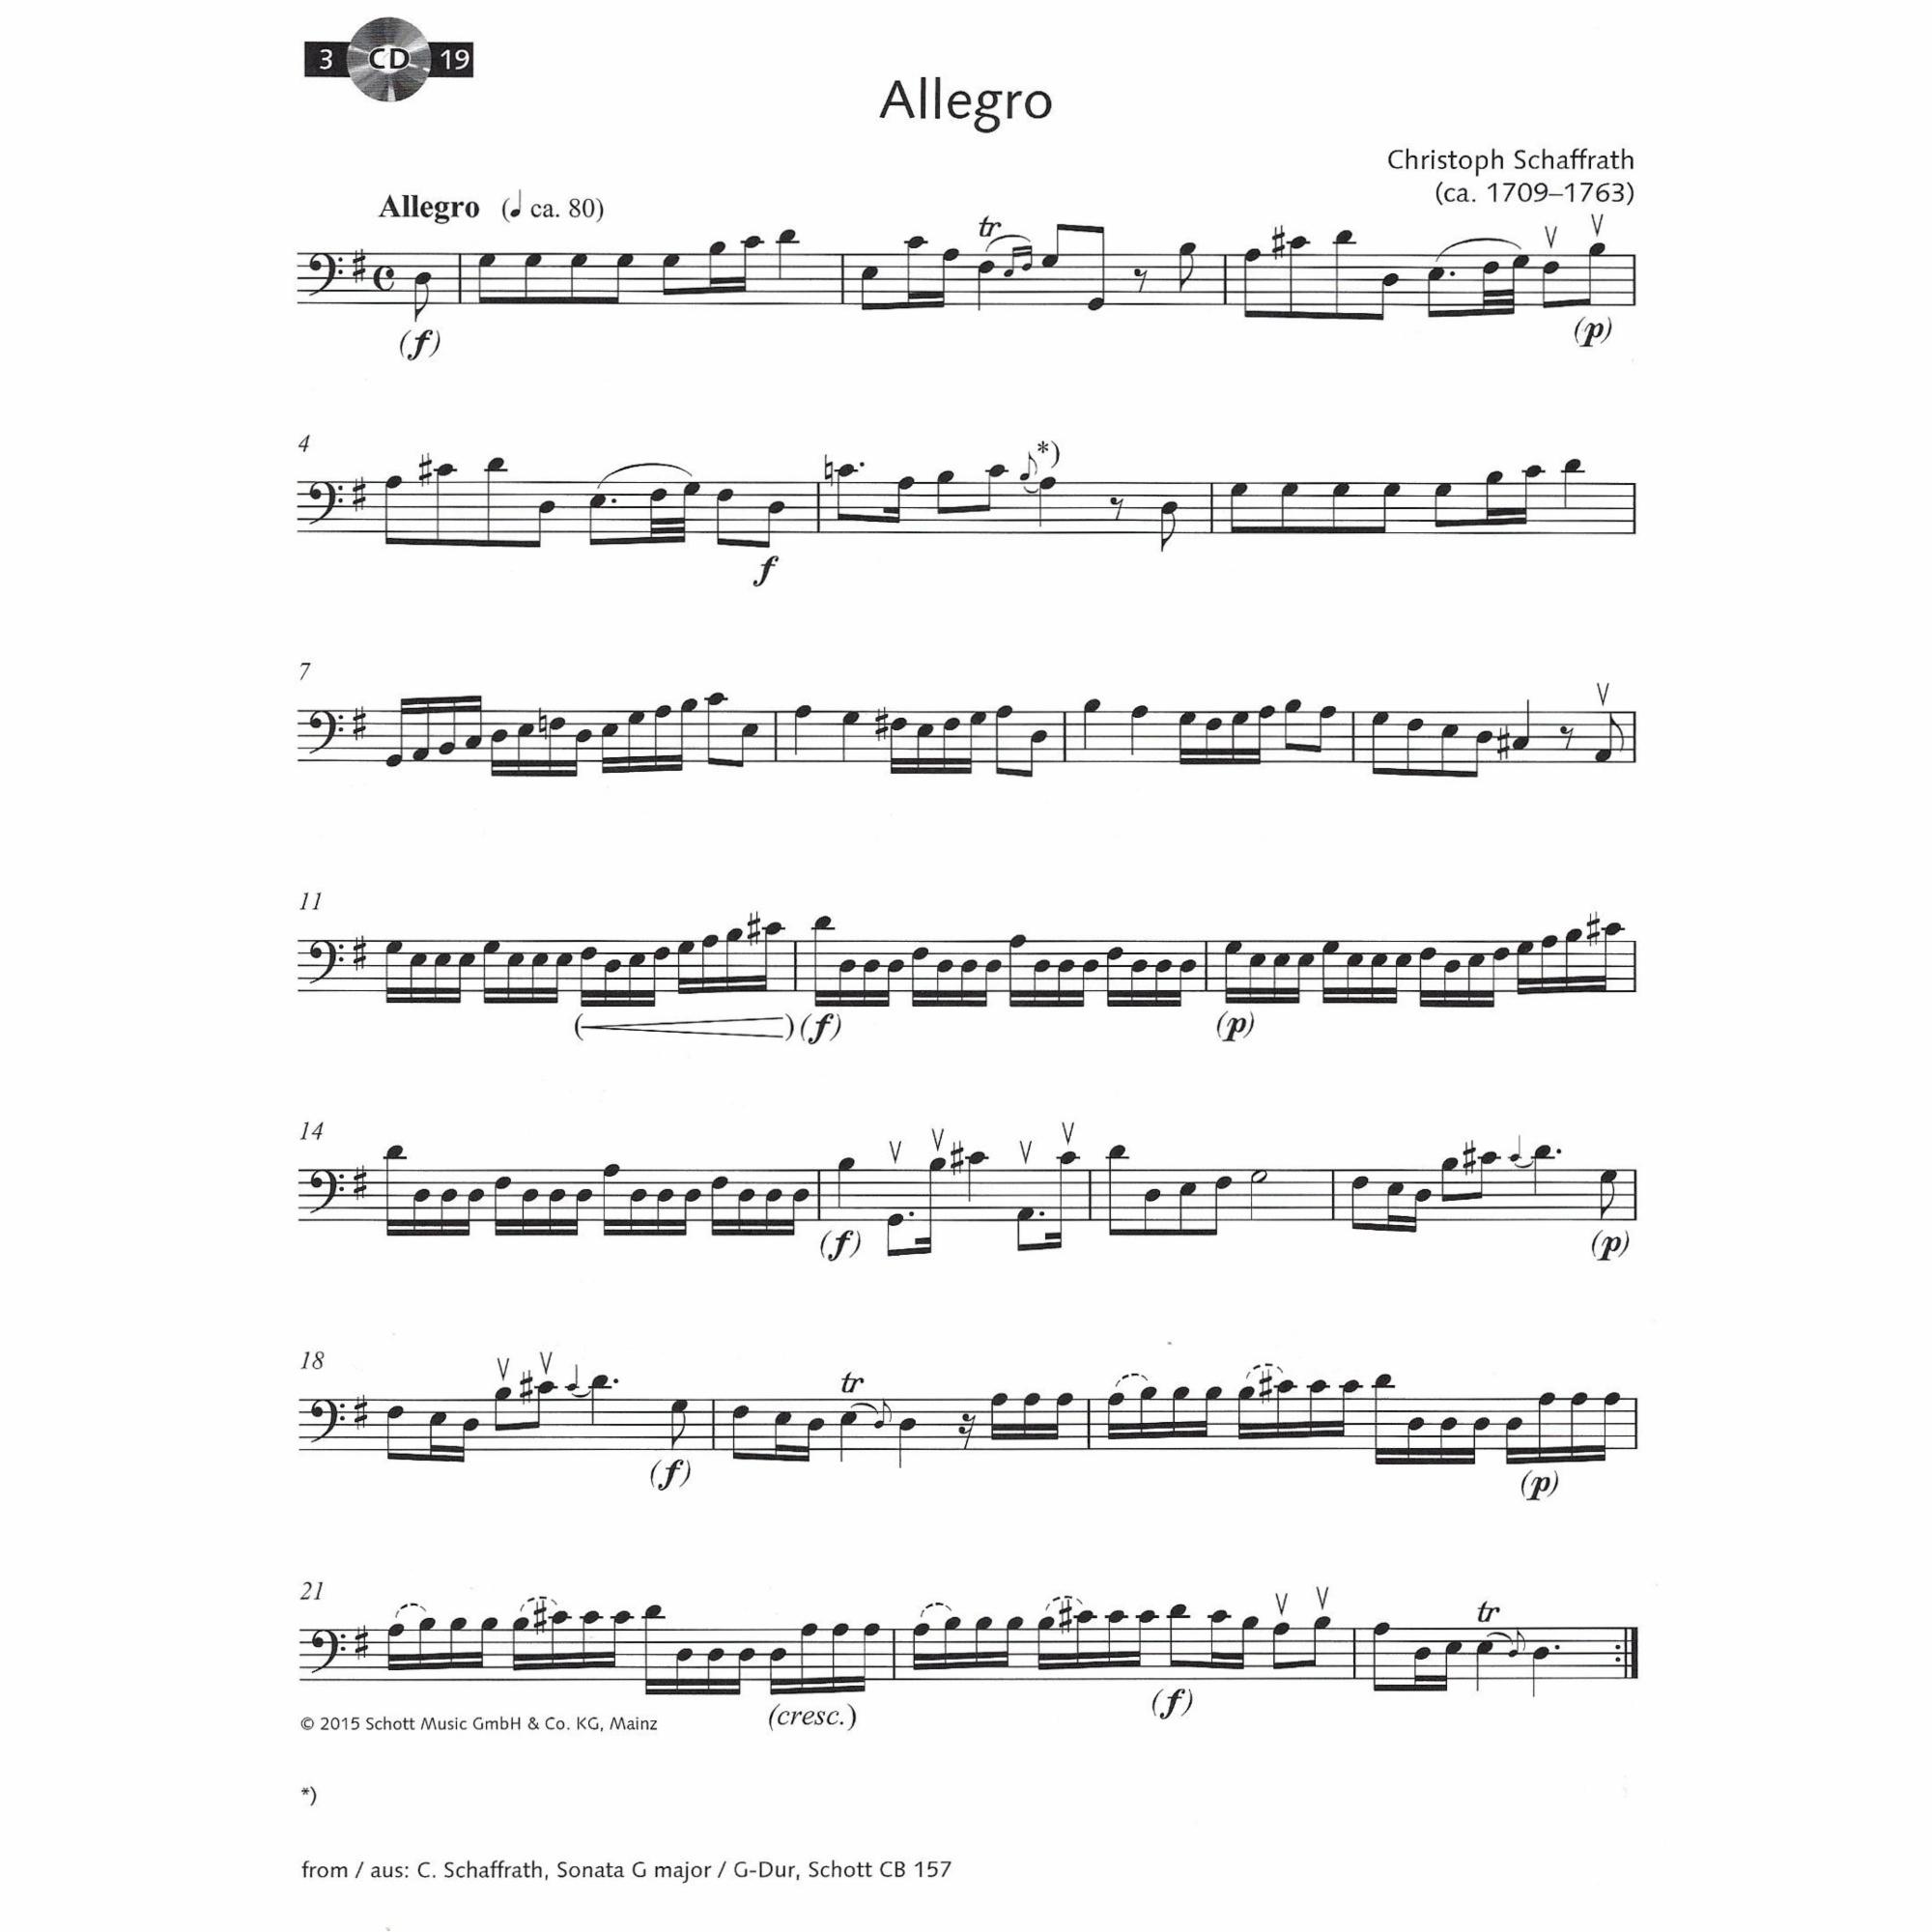 Sample: Vol. 3, Cello (Pg. 6)